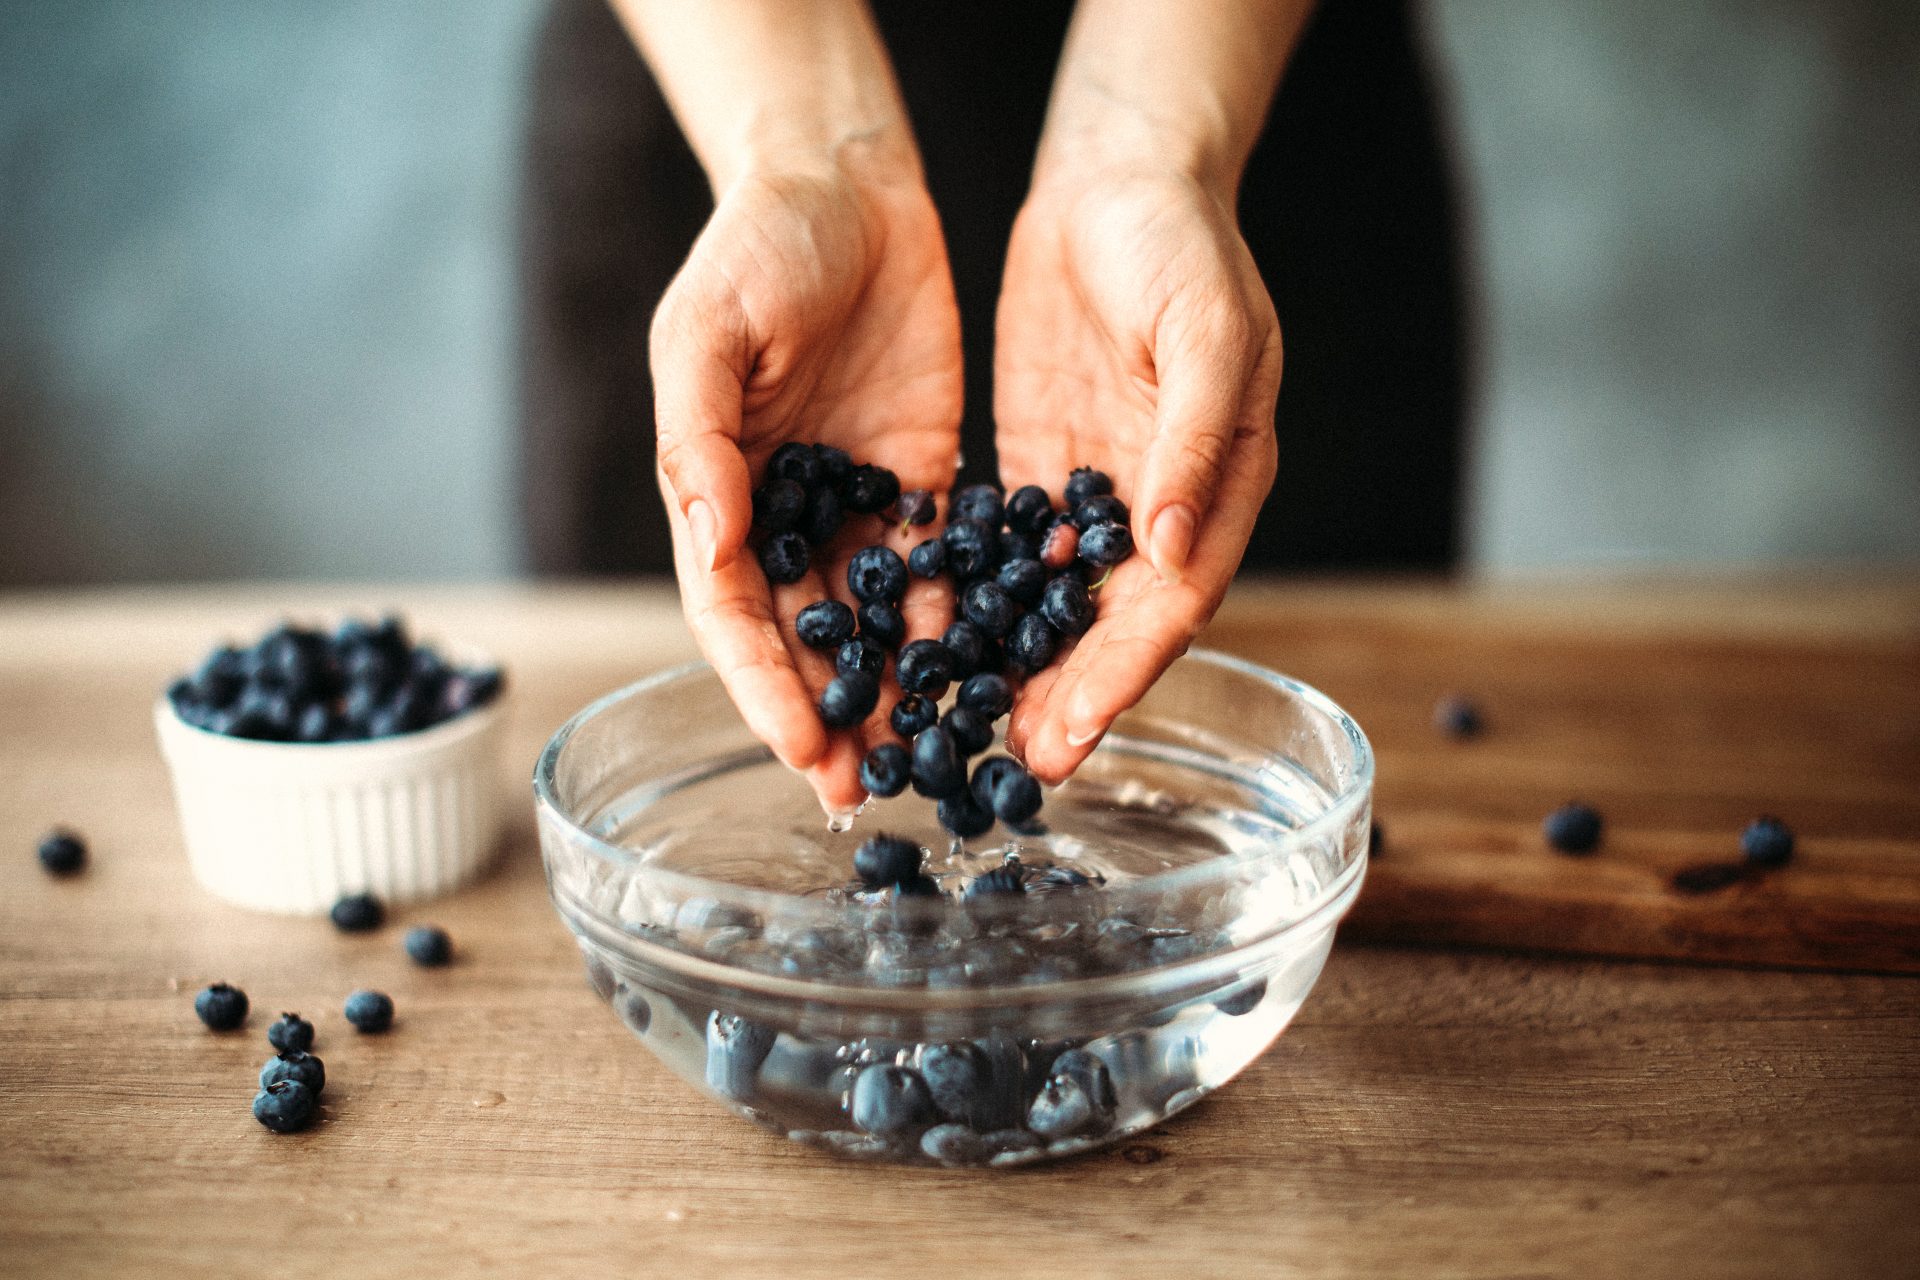 Berries: Pre-wash with vinegar 